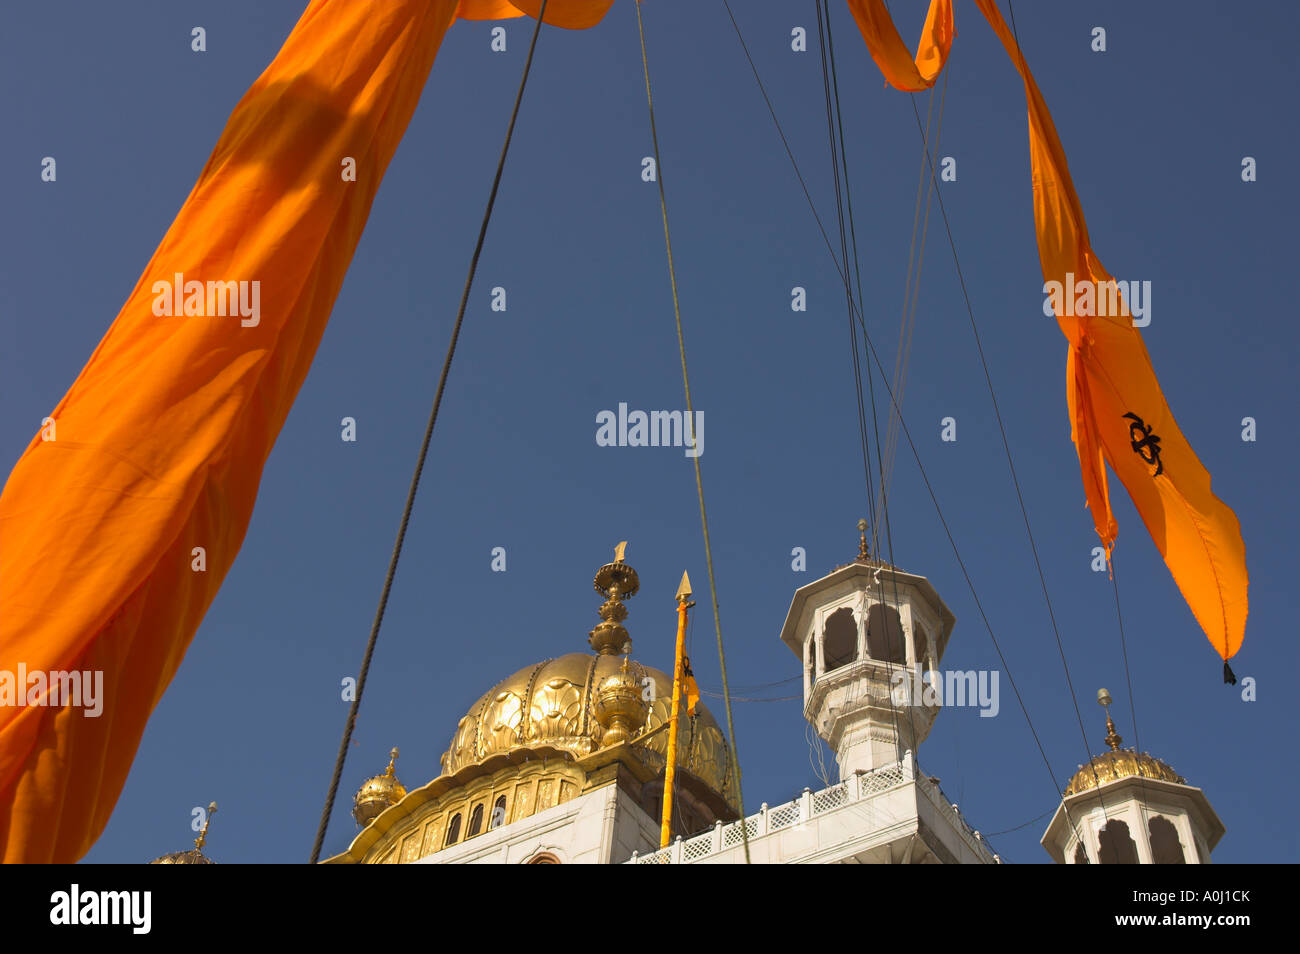 Indien Punjab Amritsar Golden Tempel prominenter Sikh spirituelles Heiligtum orange Tuch zu wickeln die maßstabsgerechte mit goldenen Kuppel verwendet Stockfoto